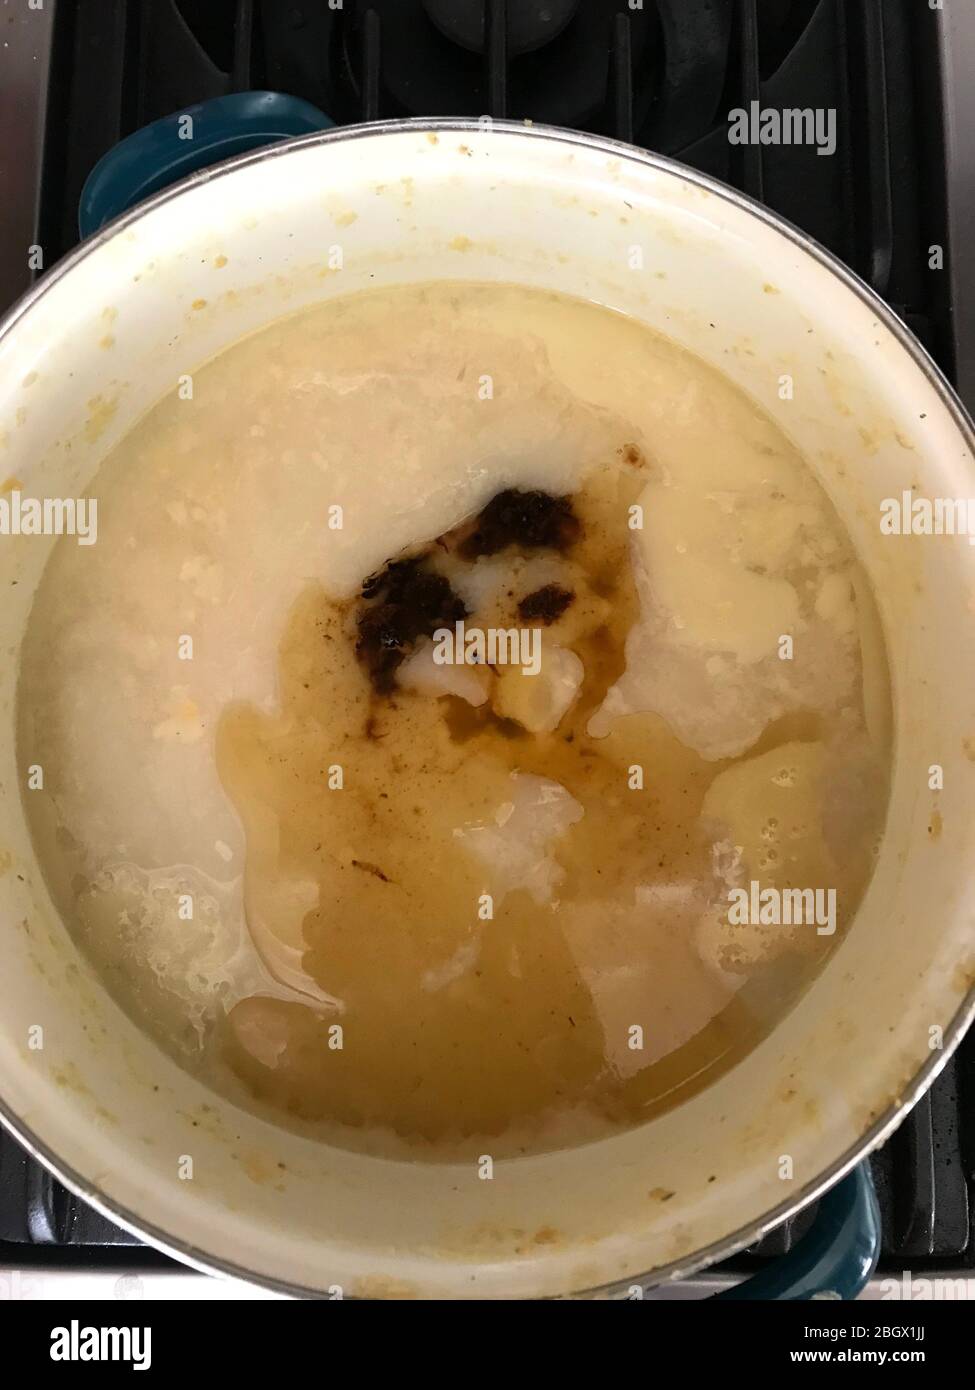 Le visage d'un chat semble apparaître dans un pot de soupe bouillante sur le poêle. Banque D'Images